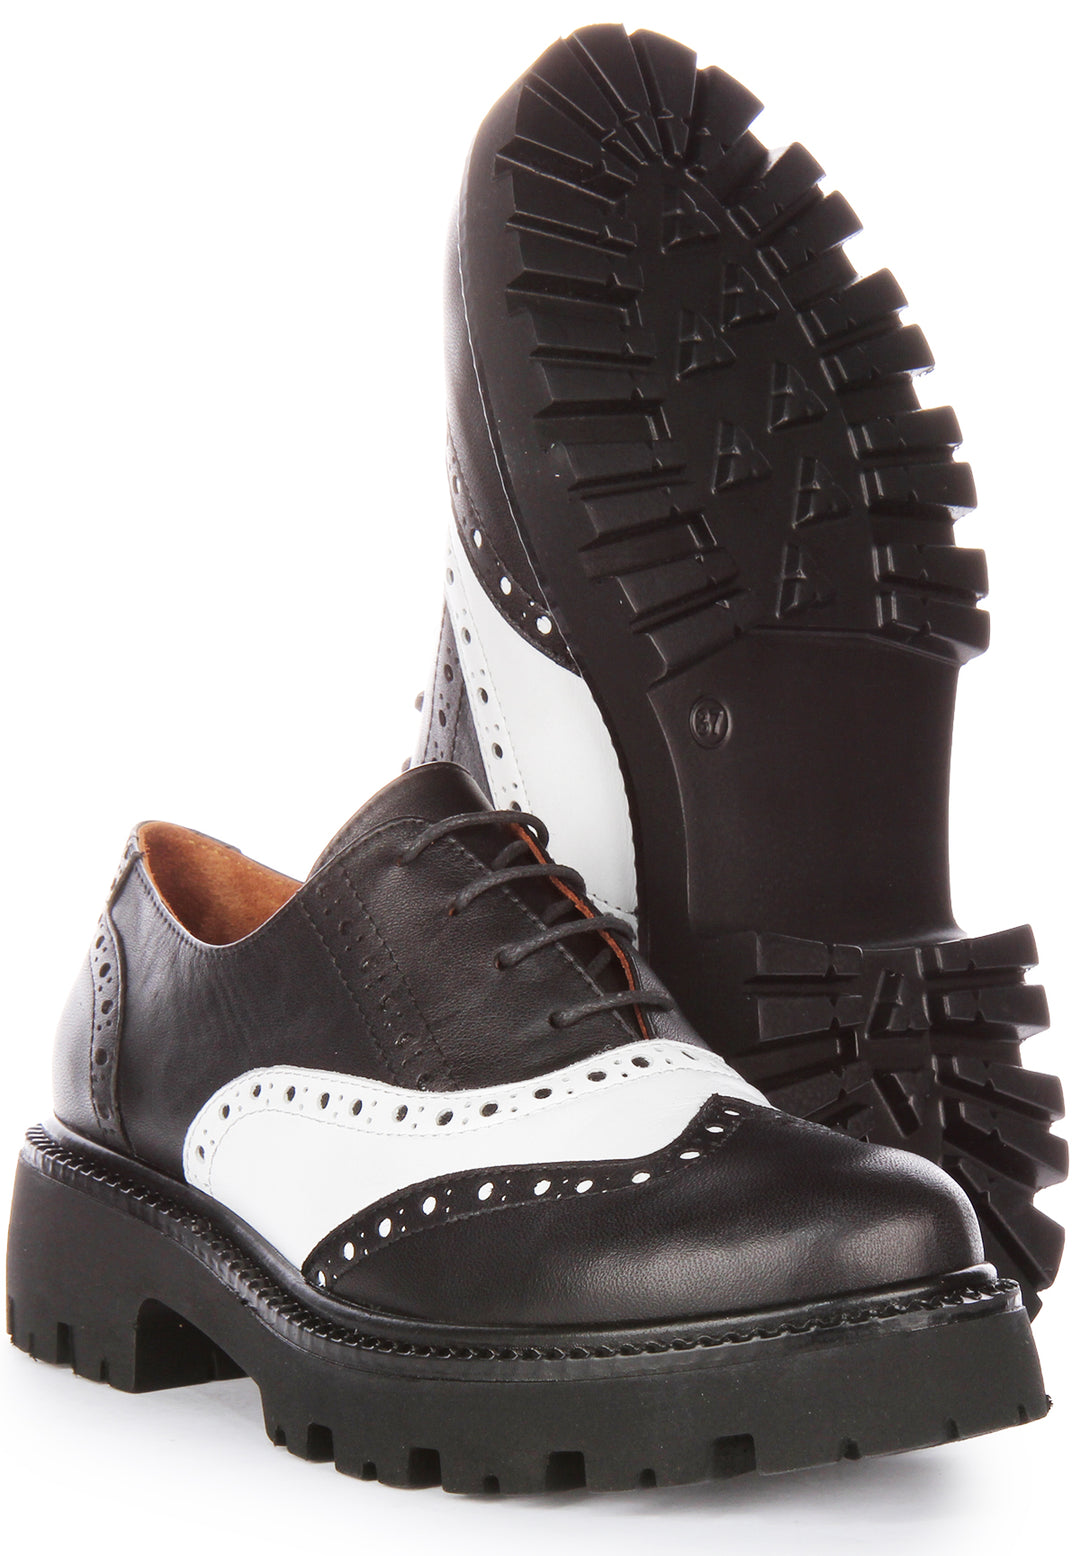 JUST REESS Millie Frauen Schnürung Leder Oxford Schuhe Schwarz Weiß